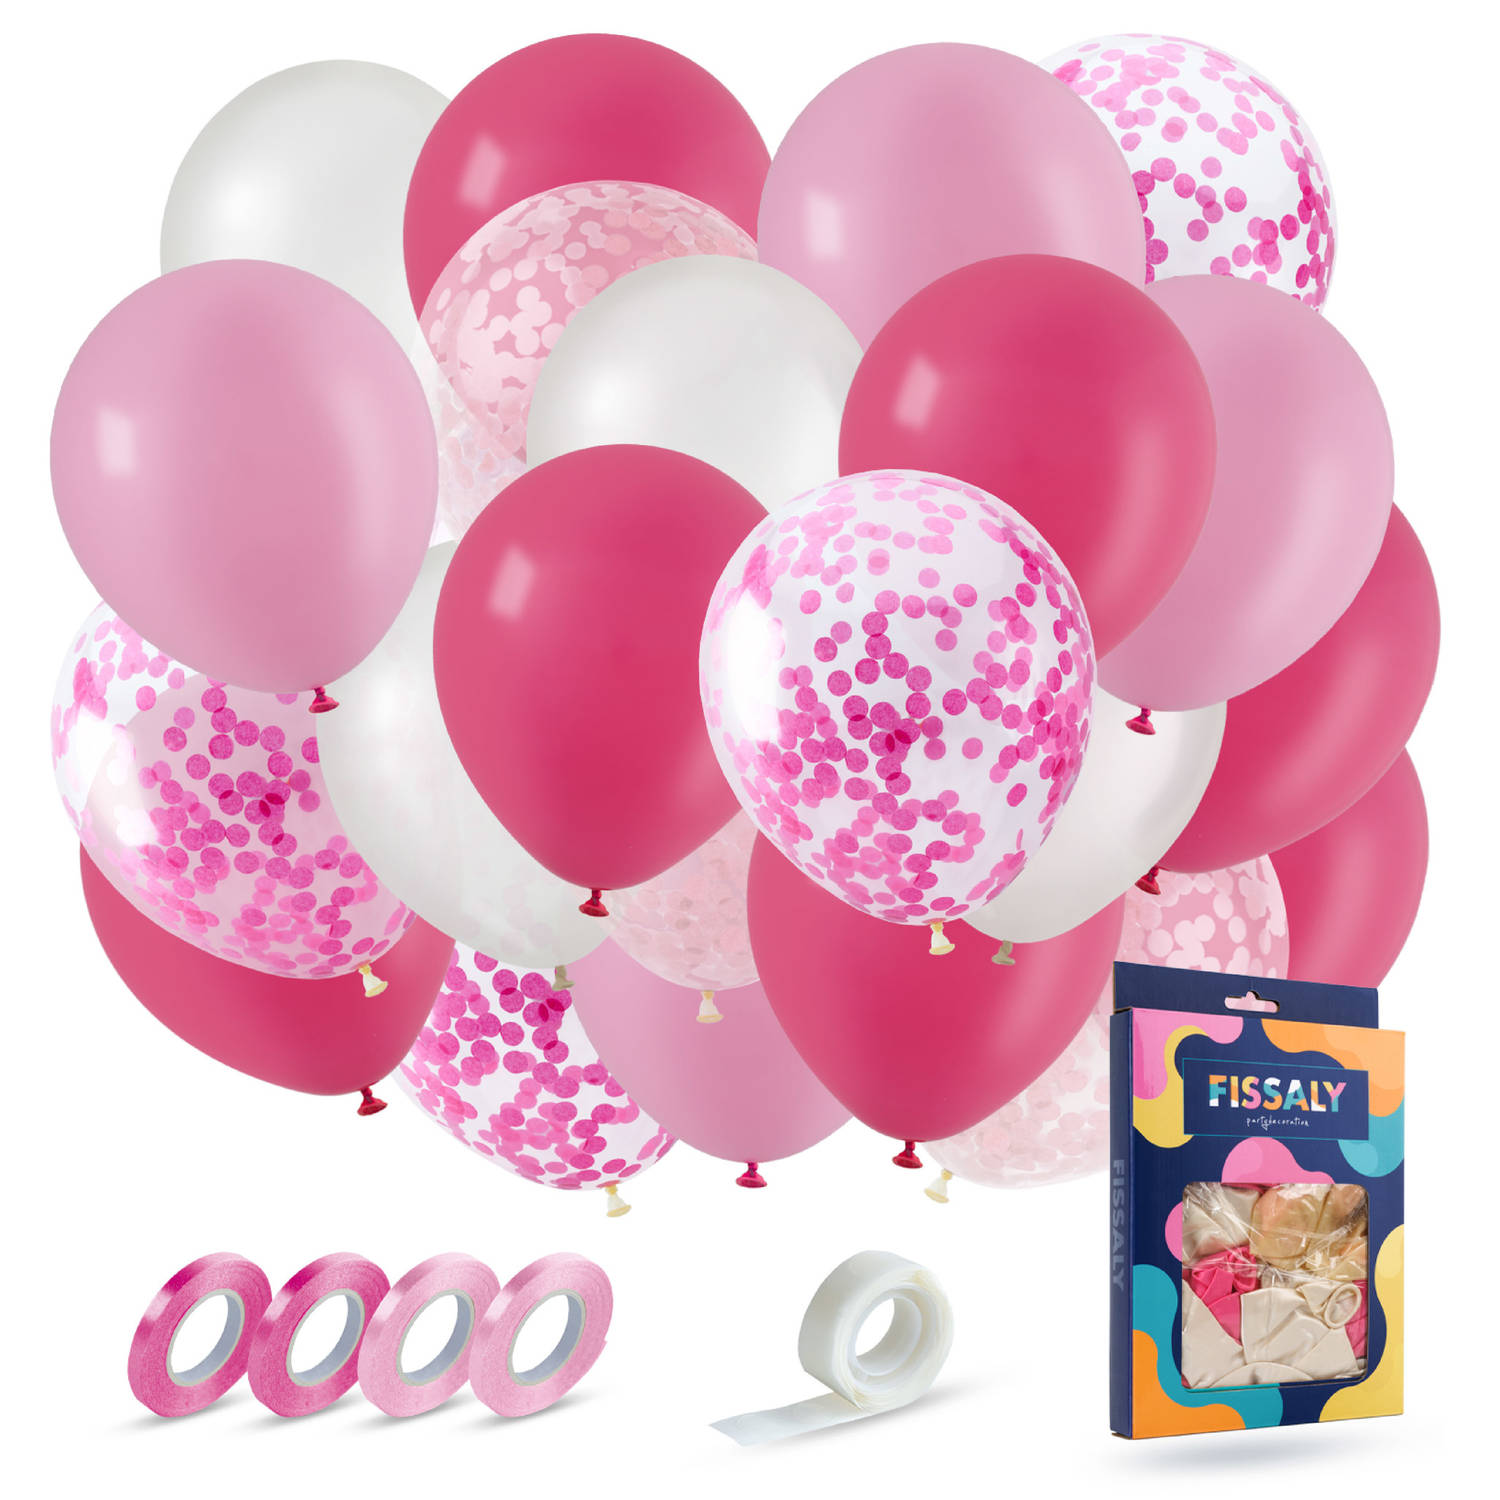 Fissaly® 40 stuks Roze, Wit & Donkerroze Helium Ballonnen met Lint – Verjaardag Versiering Decoratie – Papieren Confetti – Latex